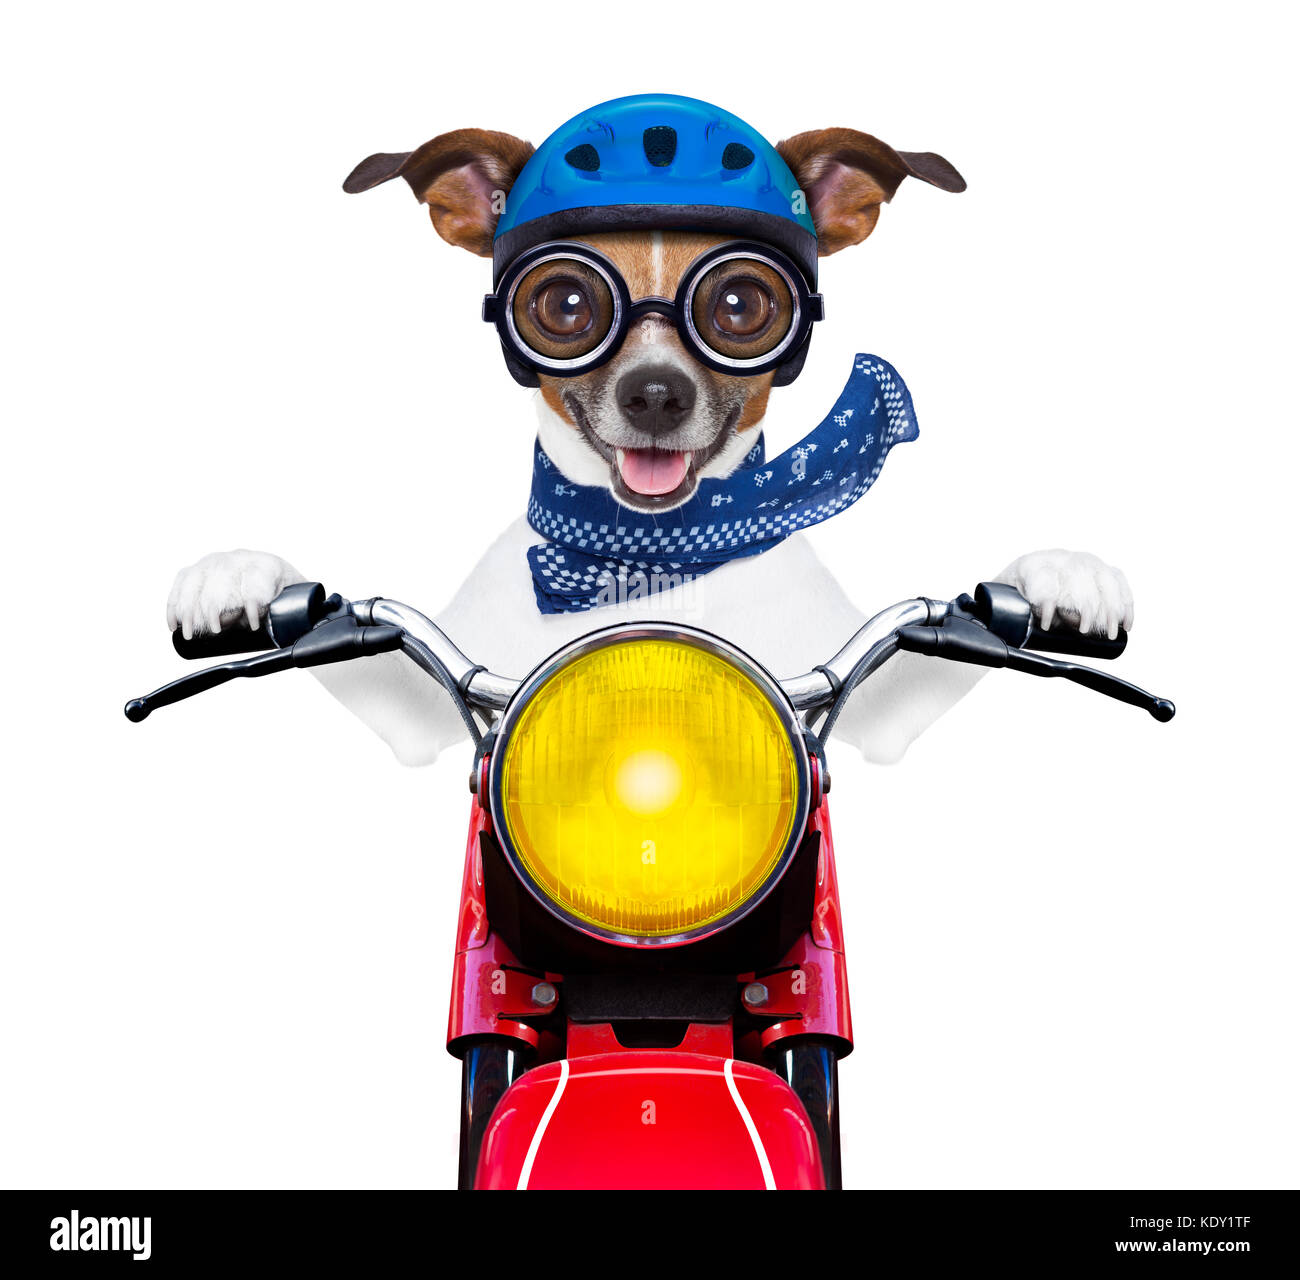 Motorrad Hund an Geschwindigkeit, mit Helm und verrückten Gläser  Stockfotografie - Alamy